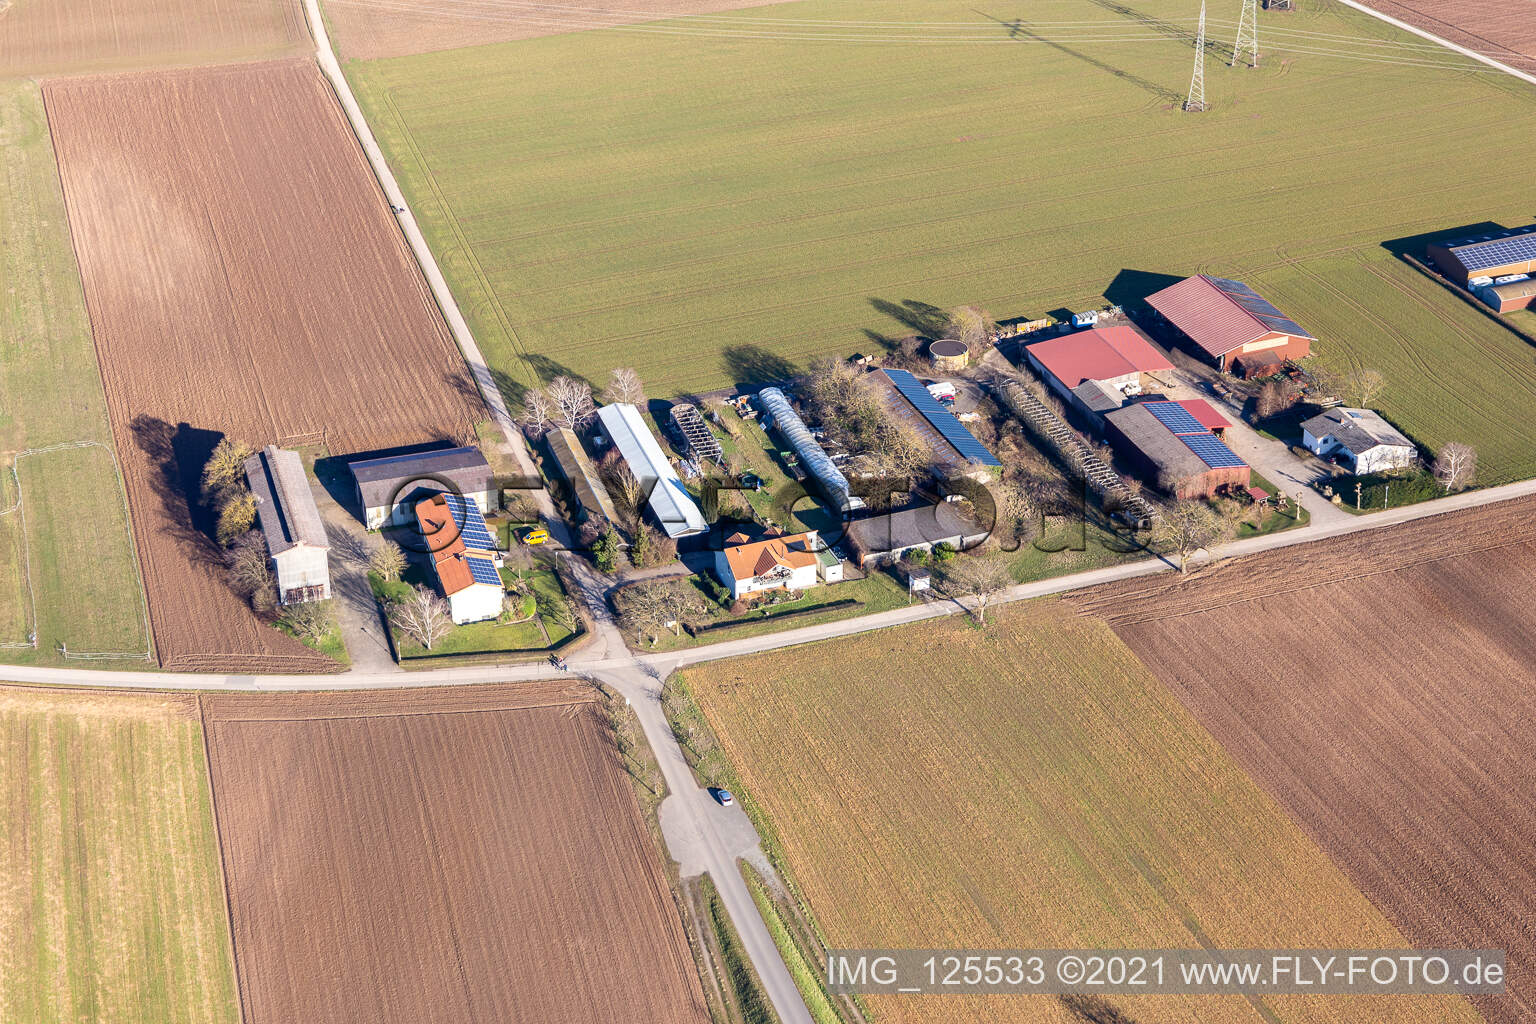 Vue aérienne de Aussiedlerhof Jürgen Emmert à Plankstadt dans le département Bade-Wurtemberg, Allemagne